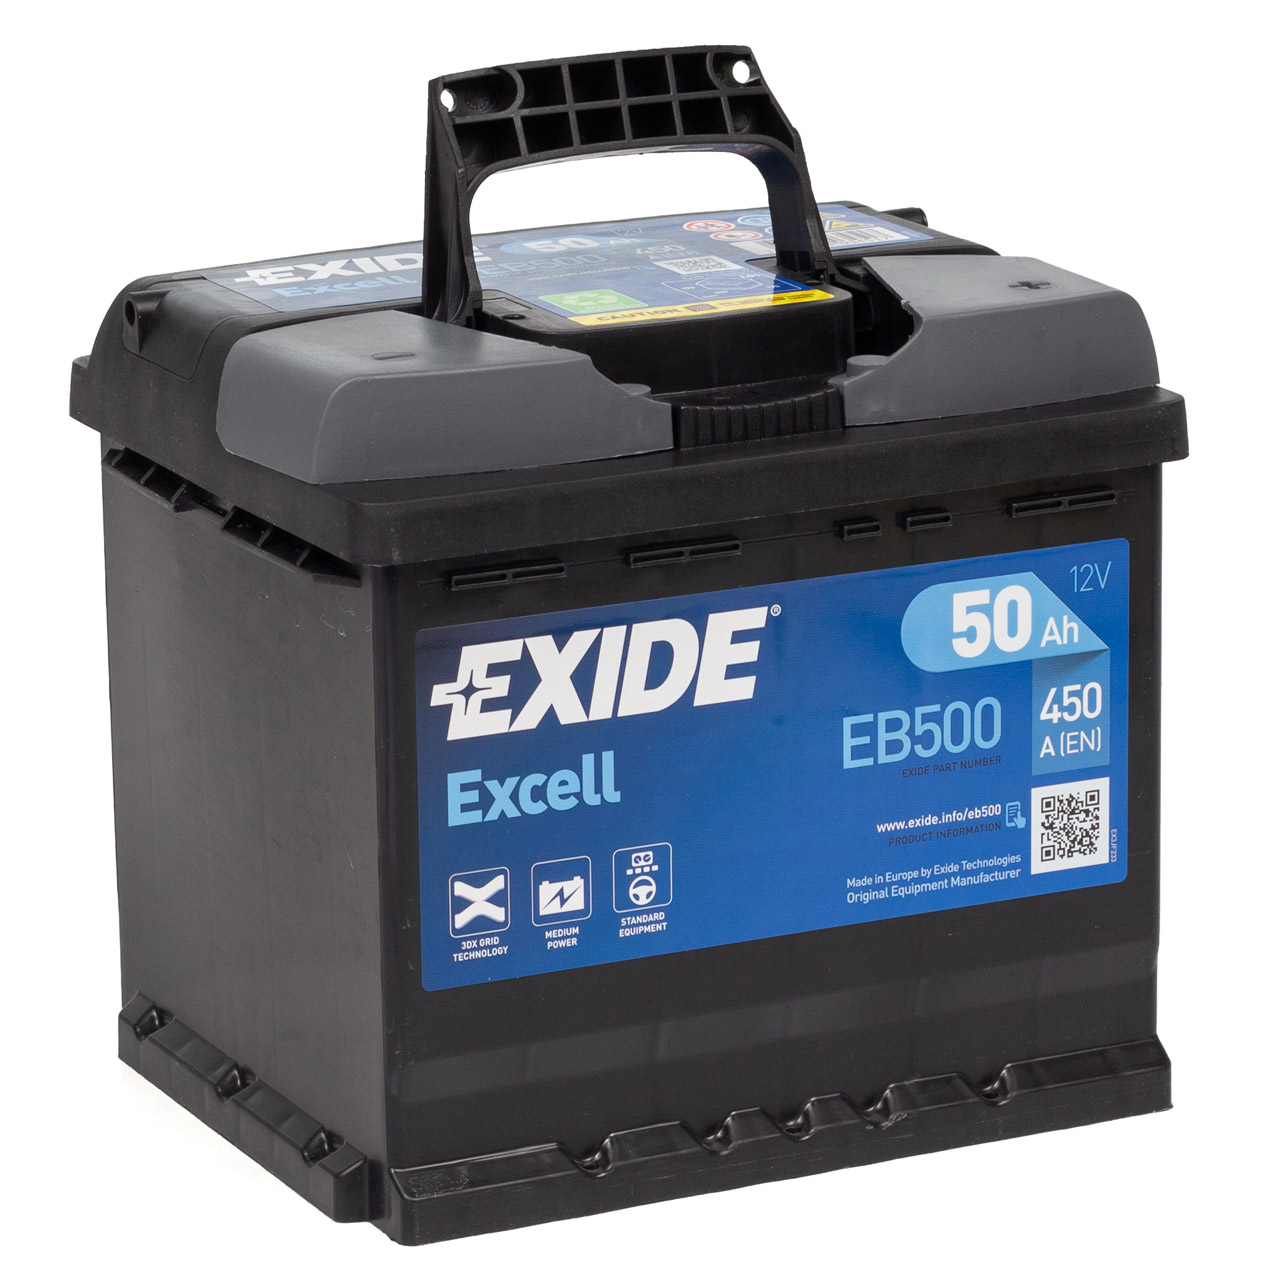 EXIDE Starterbatterien / Autobatterien - EB500 